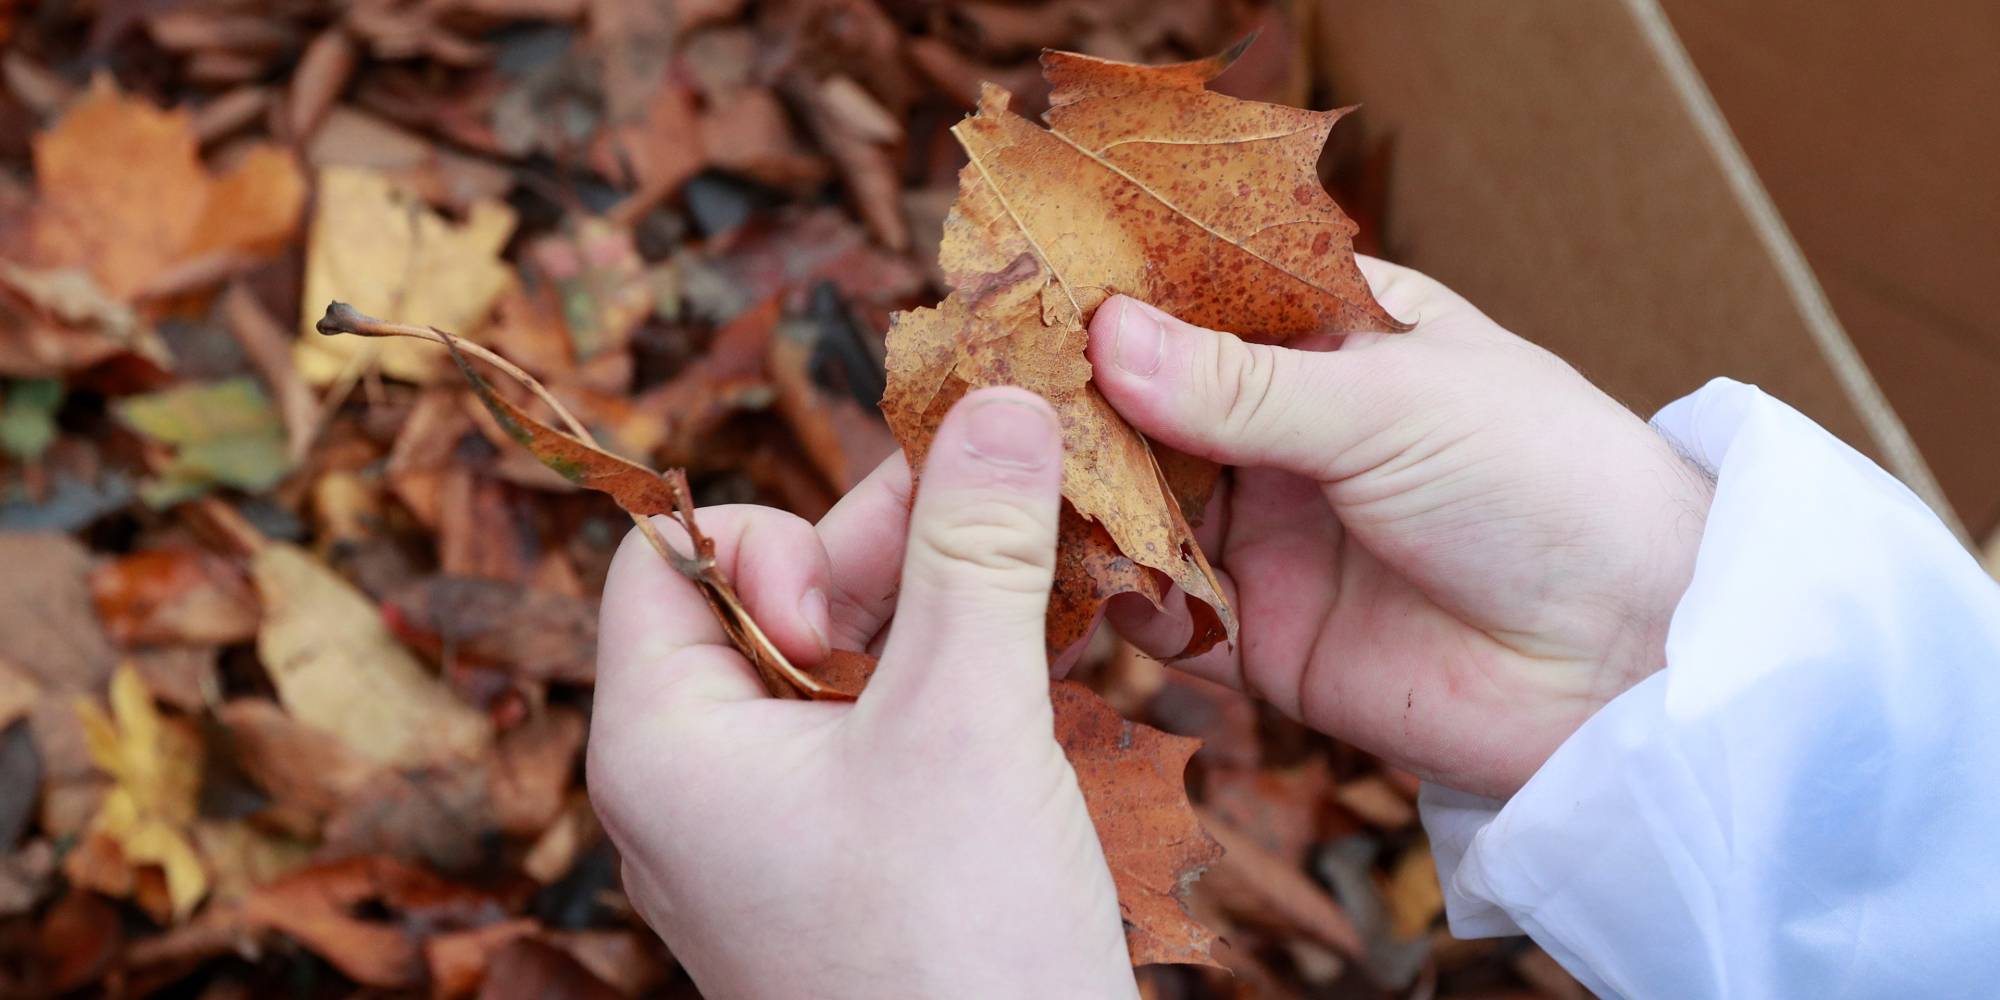  ¡No las saques todas! La función de las hojas caídas en otoño para los ecosistemas